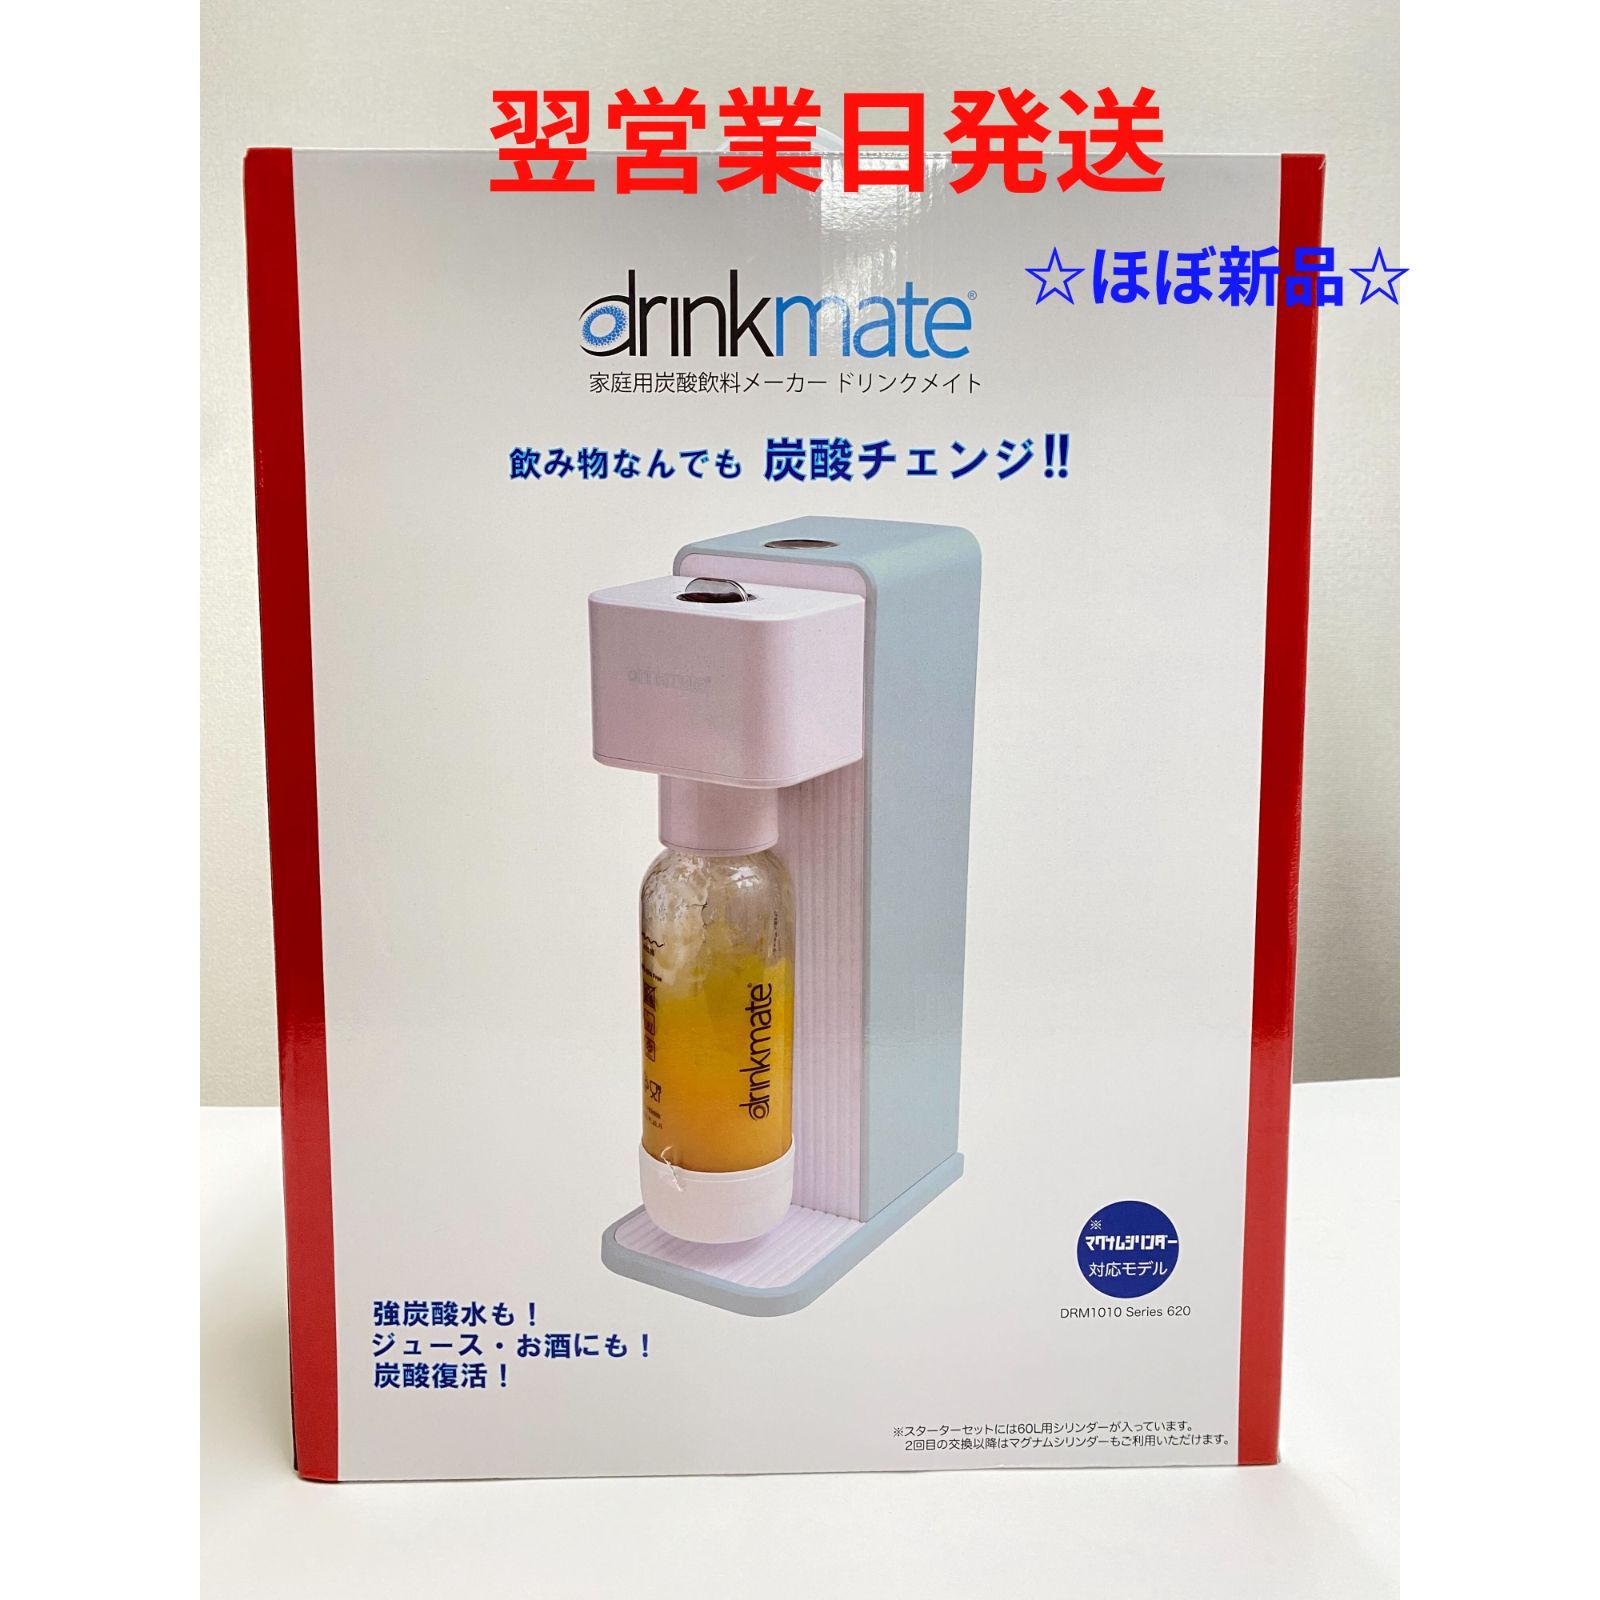 祝日 炭酸水メーカーdrinkmate シリーズ620 DRM1011 ブラック sushitai